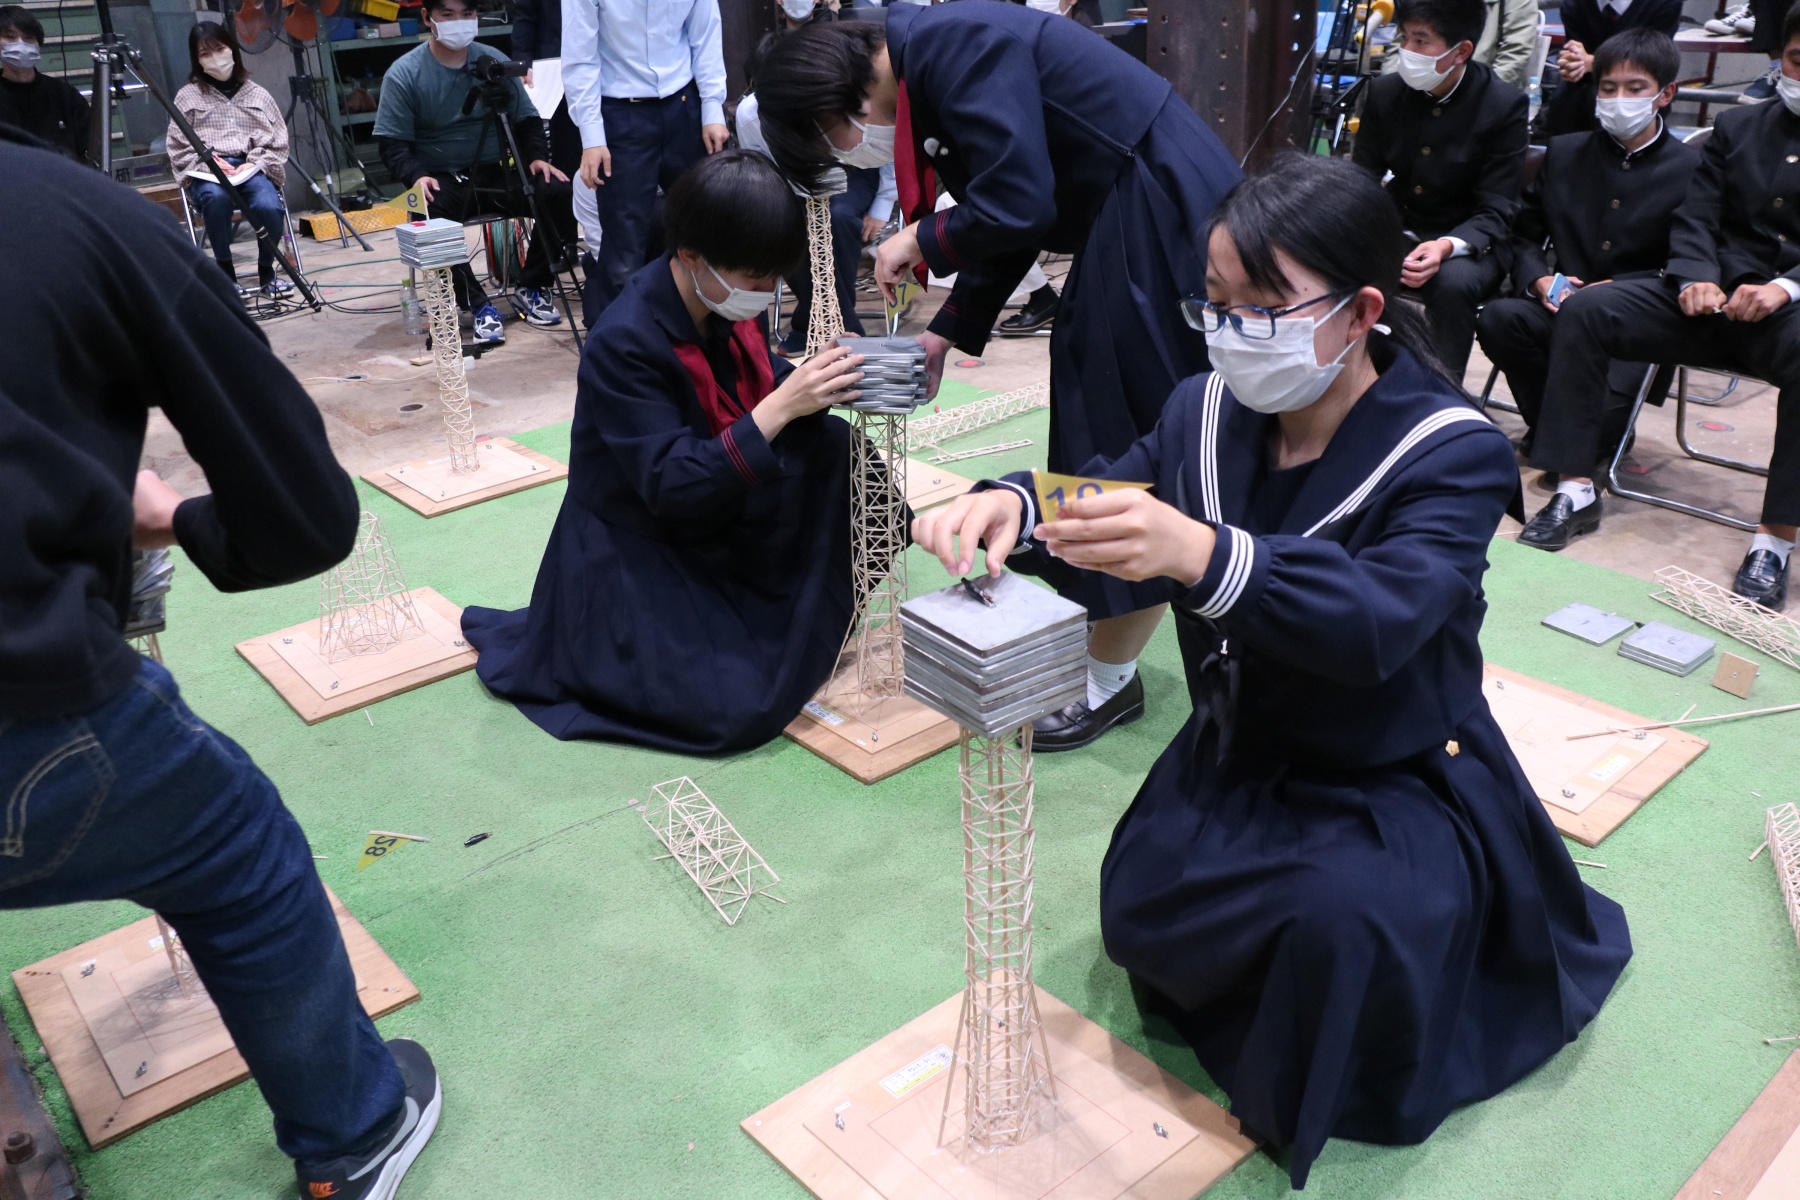 崇城大学が10月22日・23日に第11回「つまようじタワー耐震コンテスト高校生大会」を開催 -- 熊本県外からの募集を3年ぶりに再開、初参加の高校も